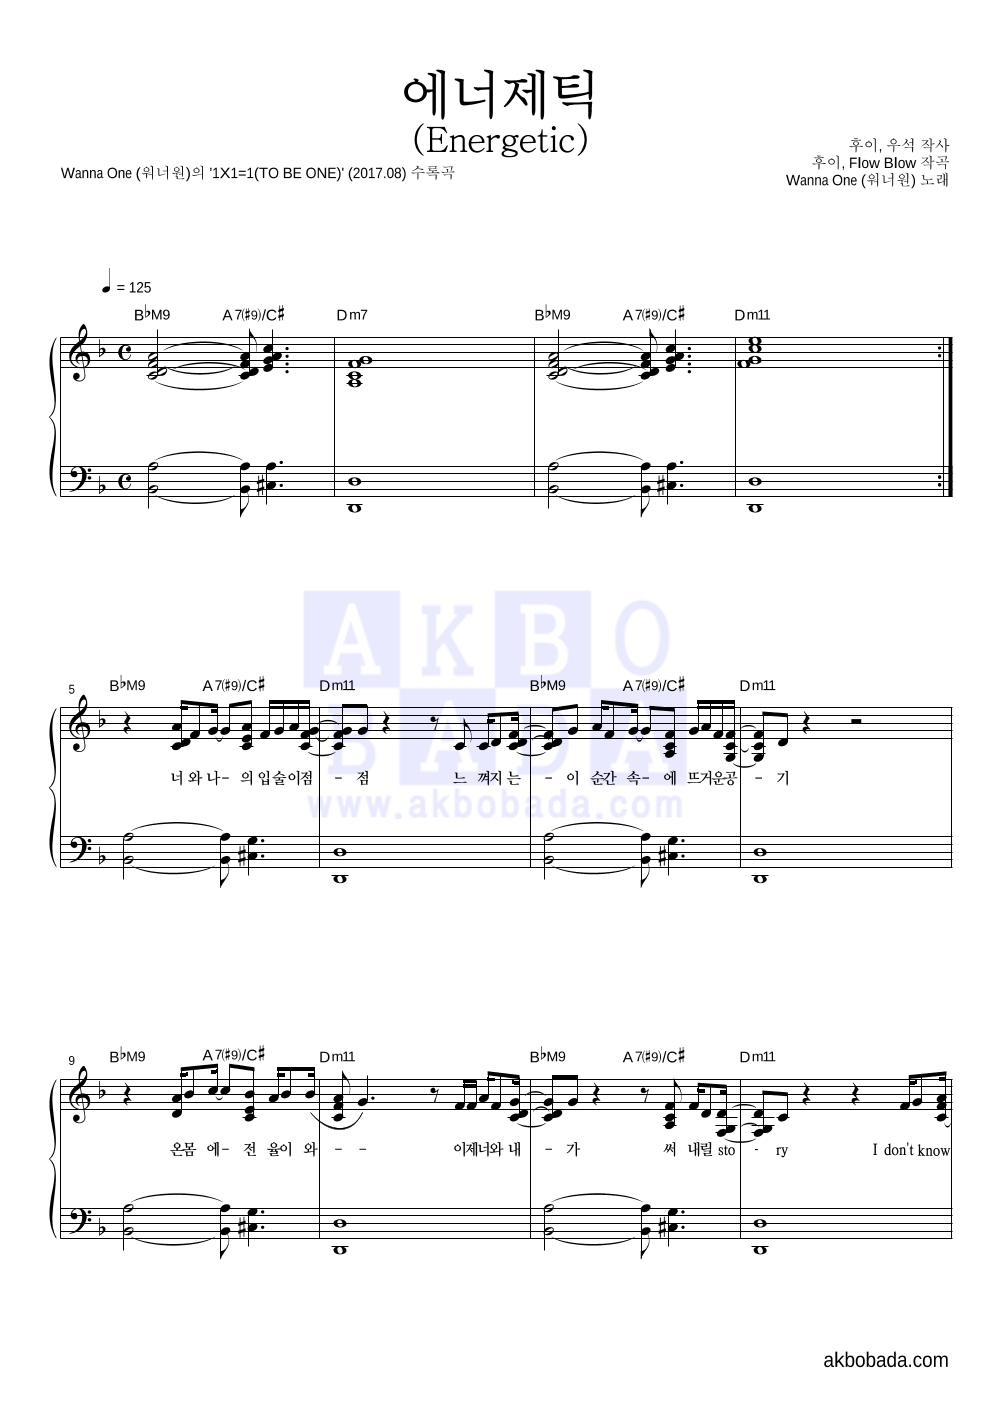 워너원 - 에너제틱 (Energetic) 피아노 2단 악보 